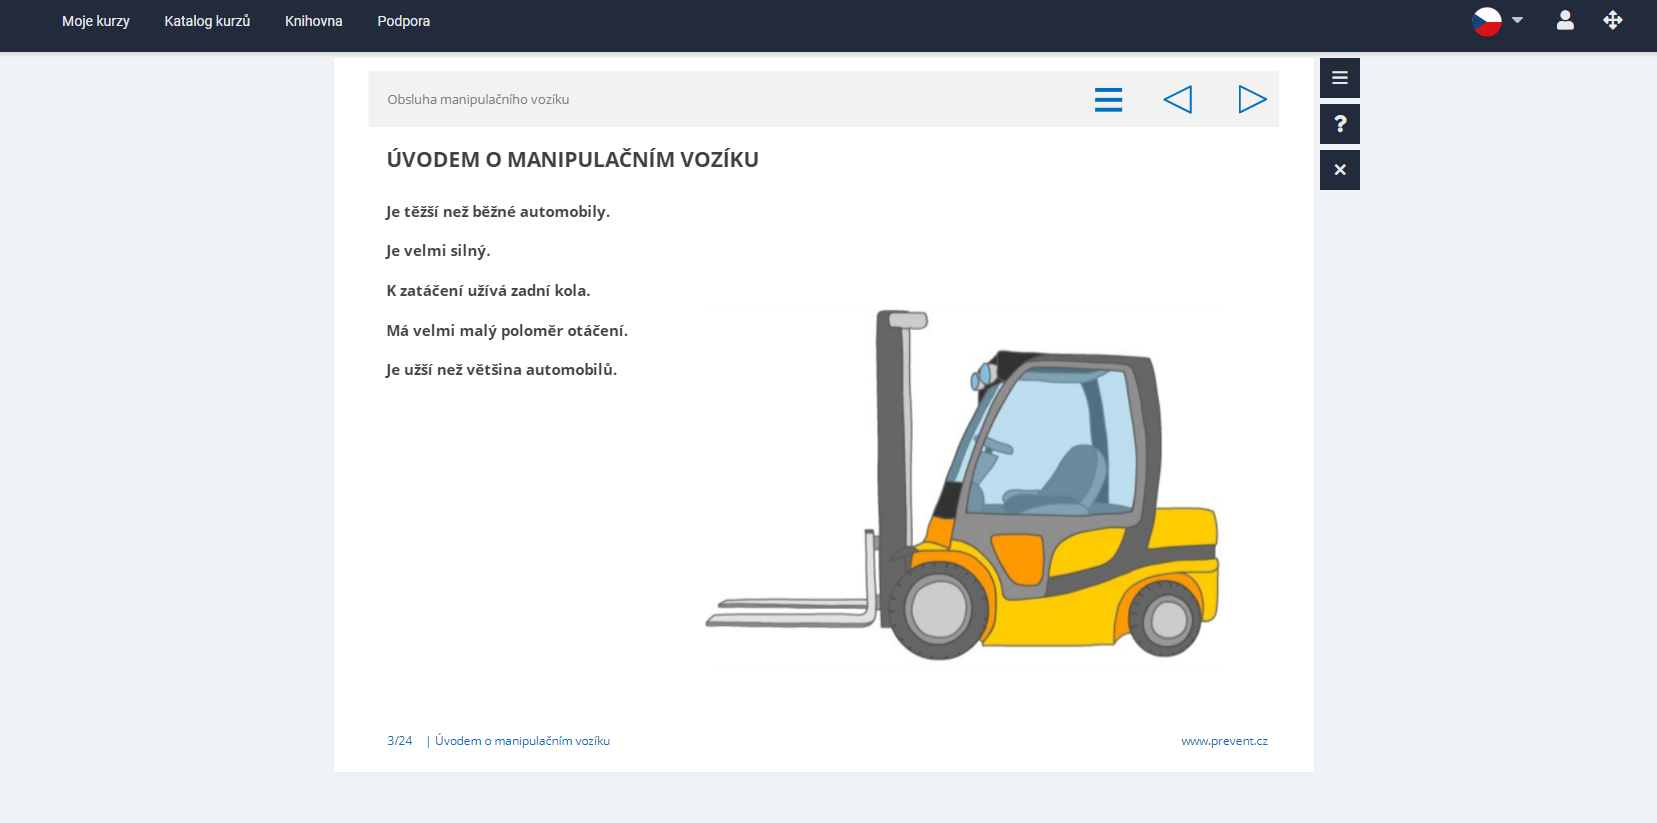 Obrazová ukázka z kurzu Obsluha manipulačních vozíků portálu eSovak